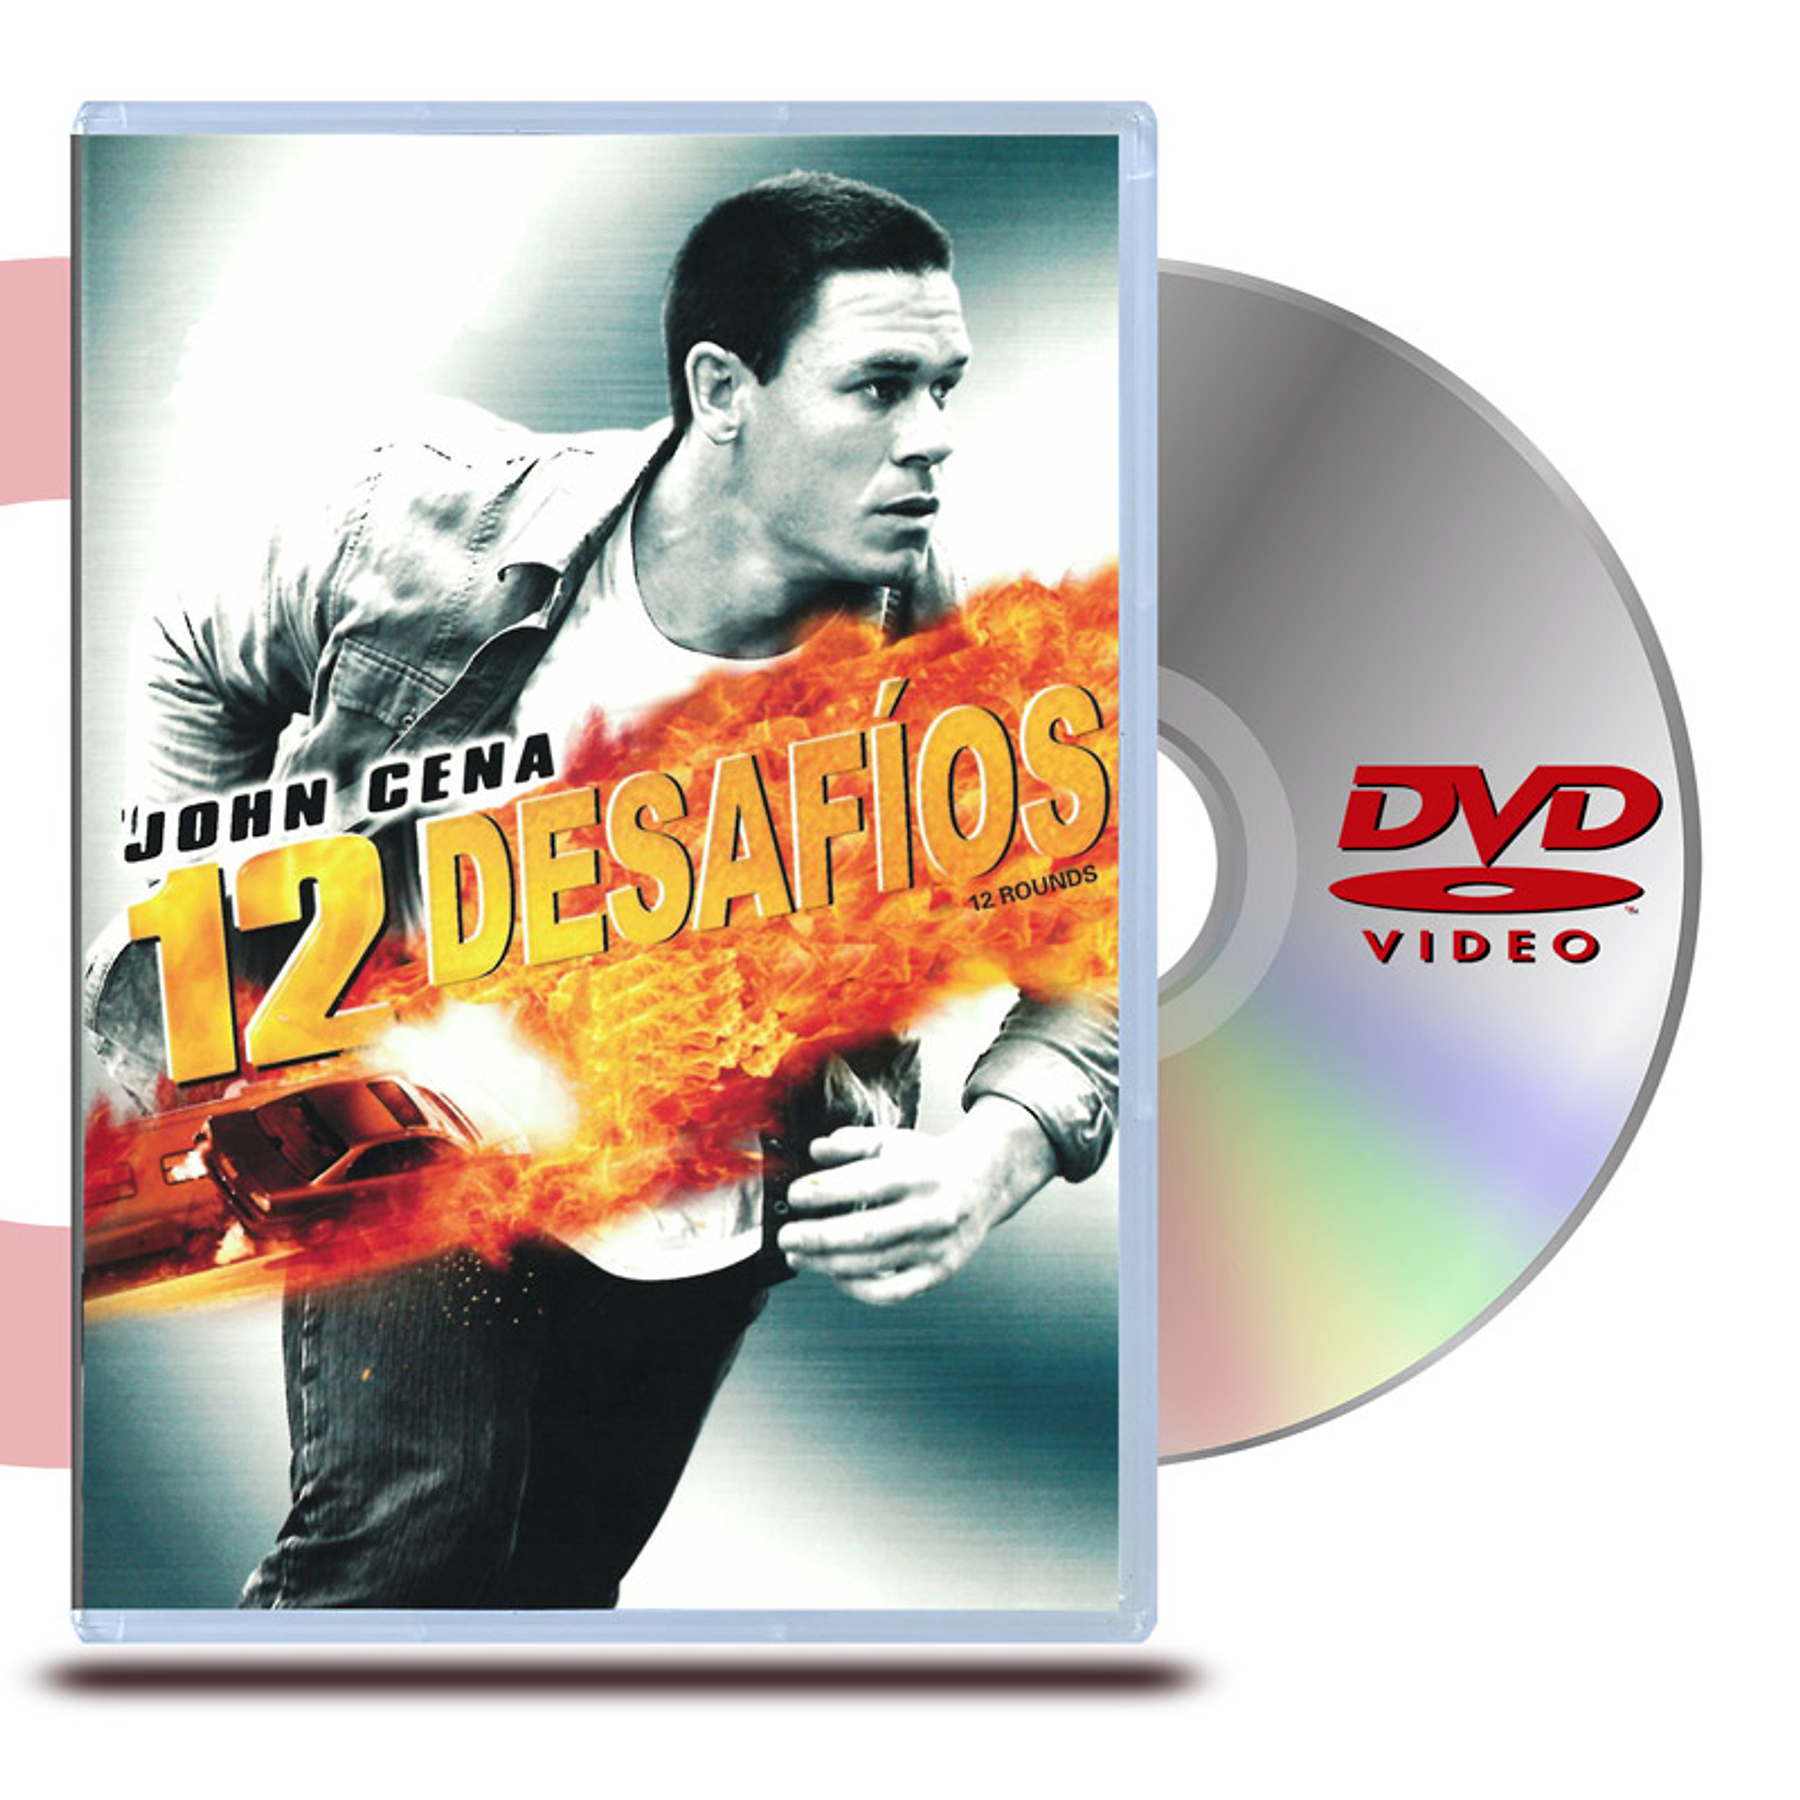 DVD 12 DESAFÍOS